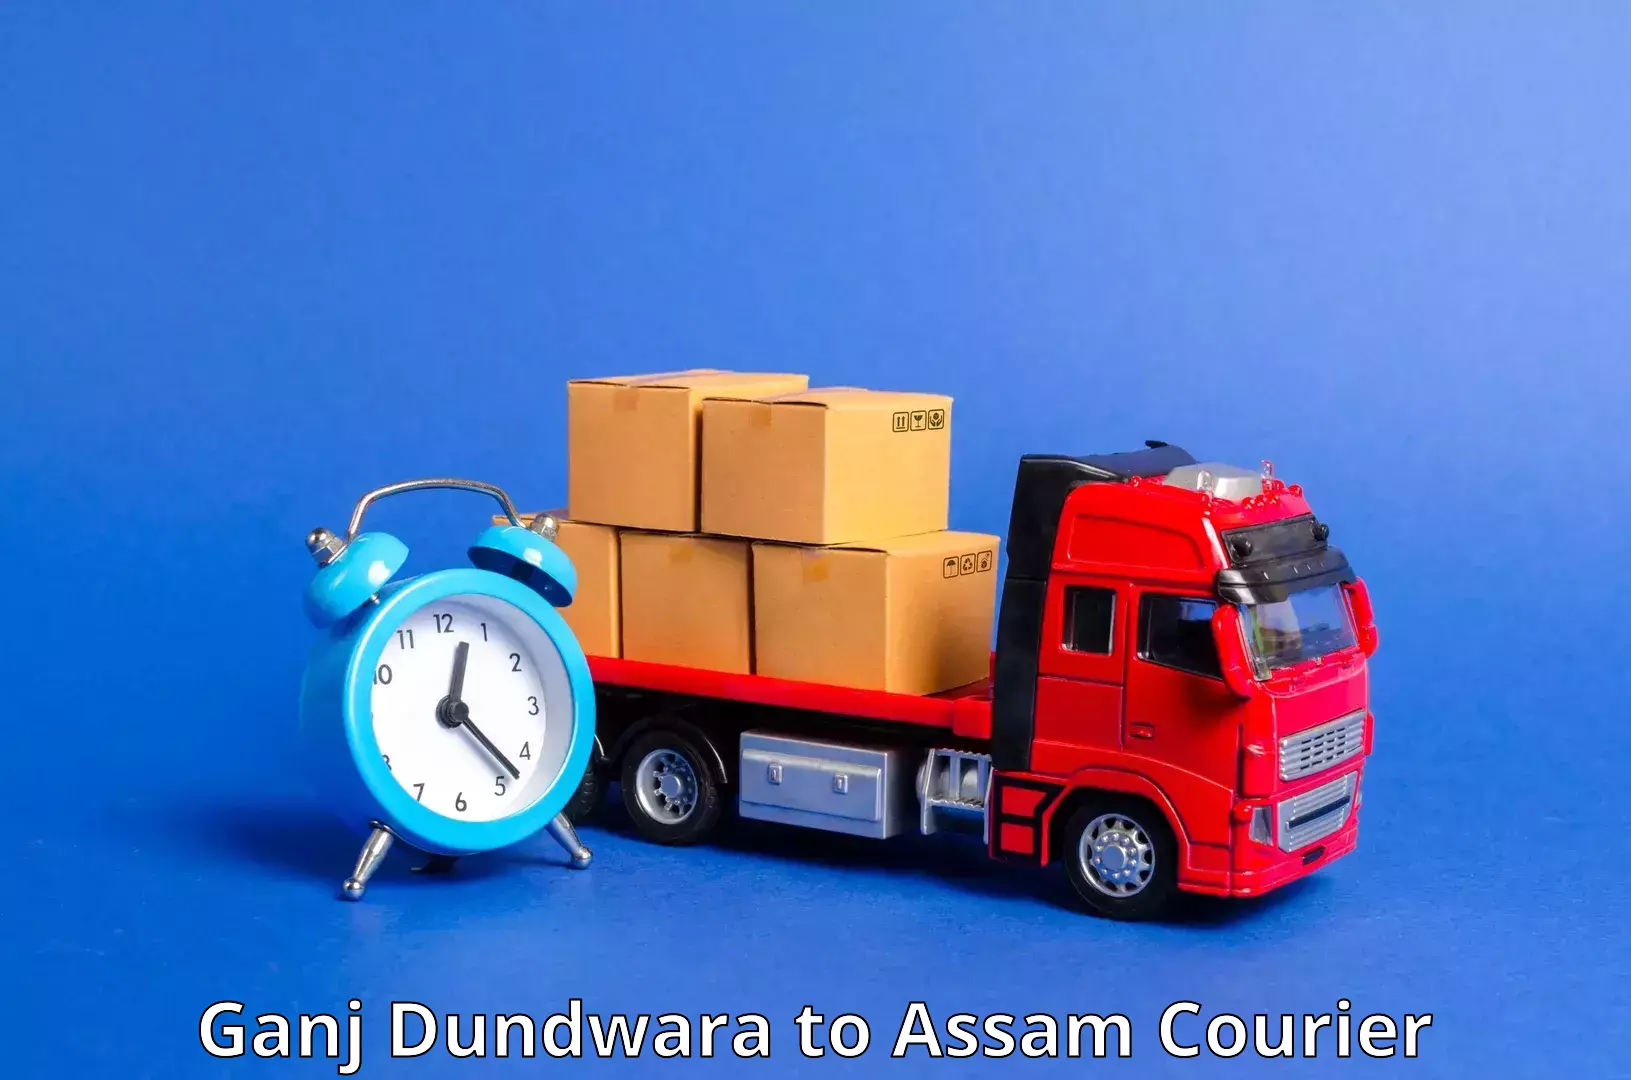 Punctual parcel services Ganj Dundwara to IIIT Guwahati